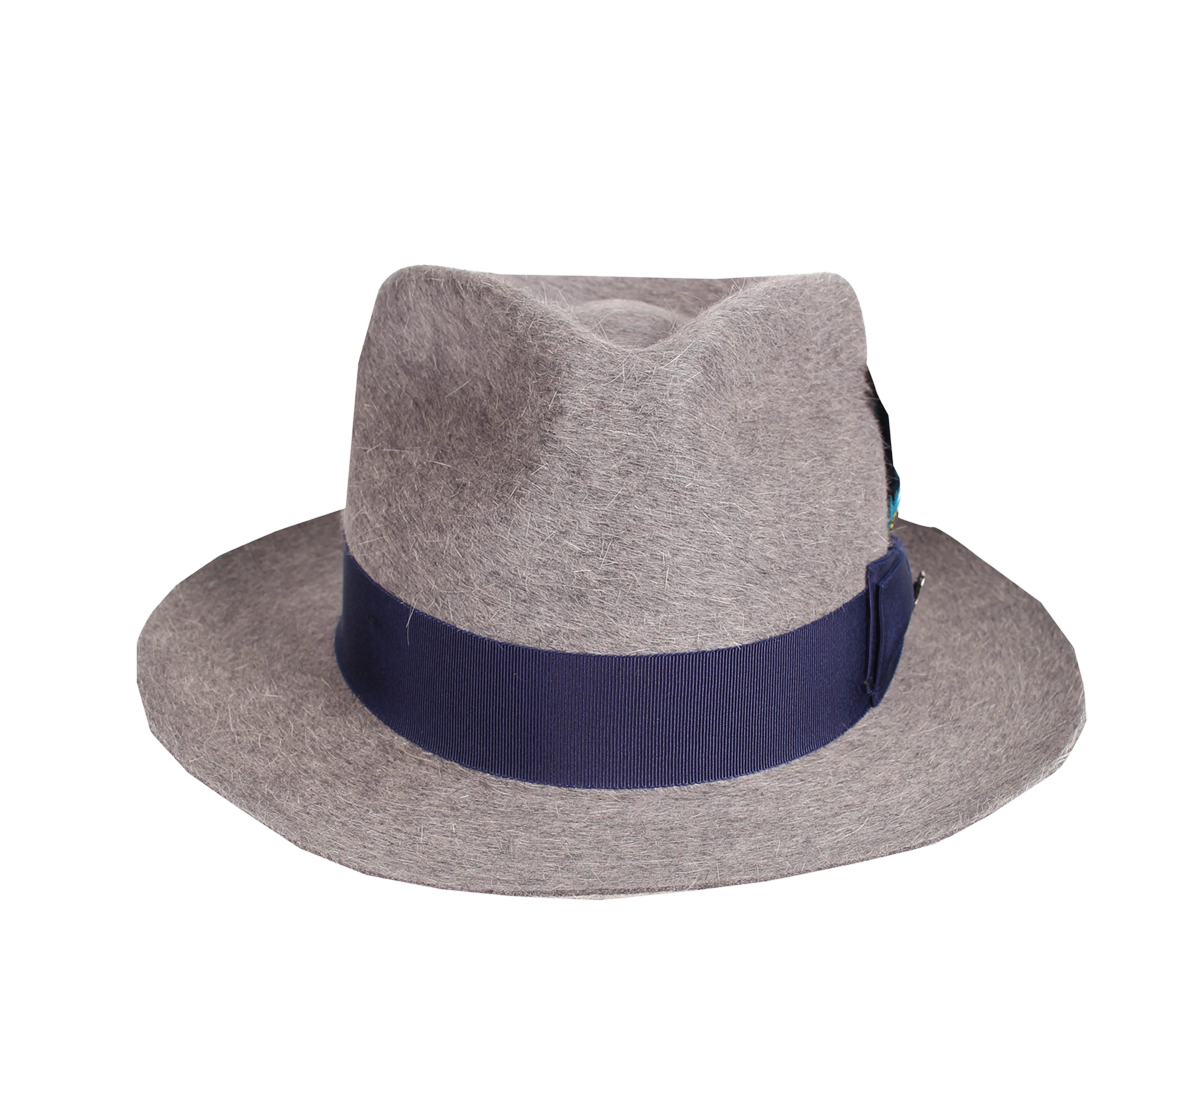 naples_grey_front - Magill Hats